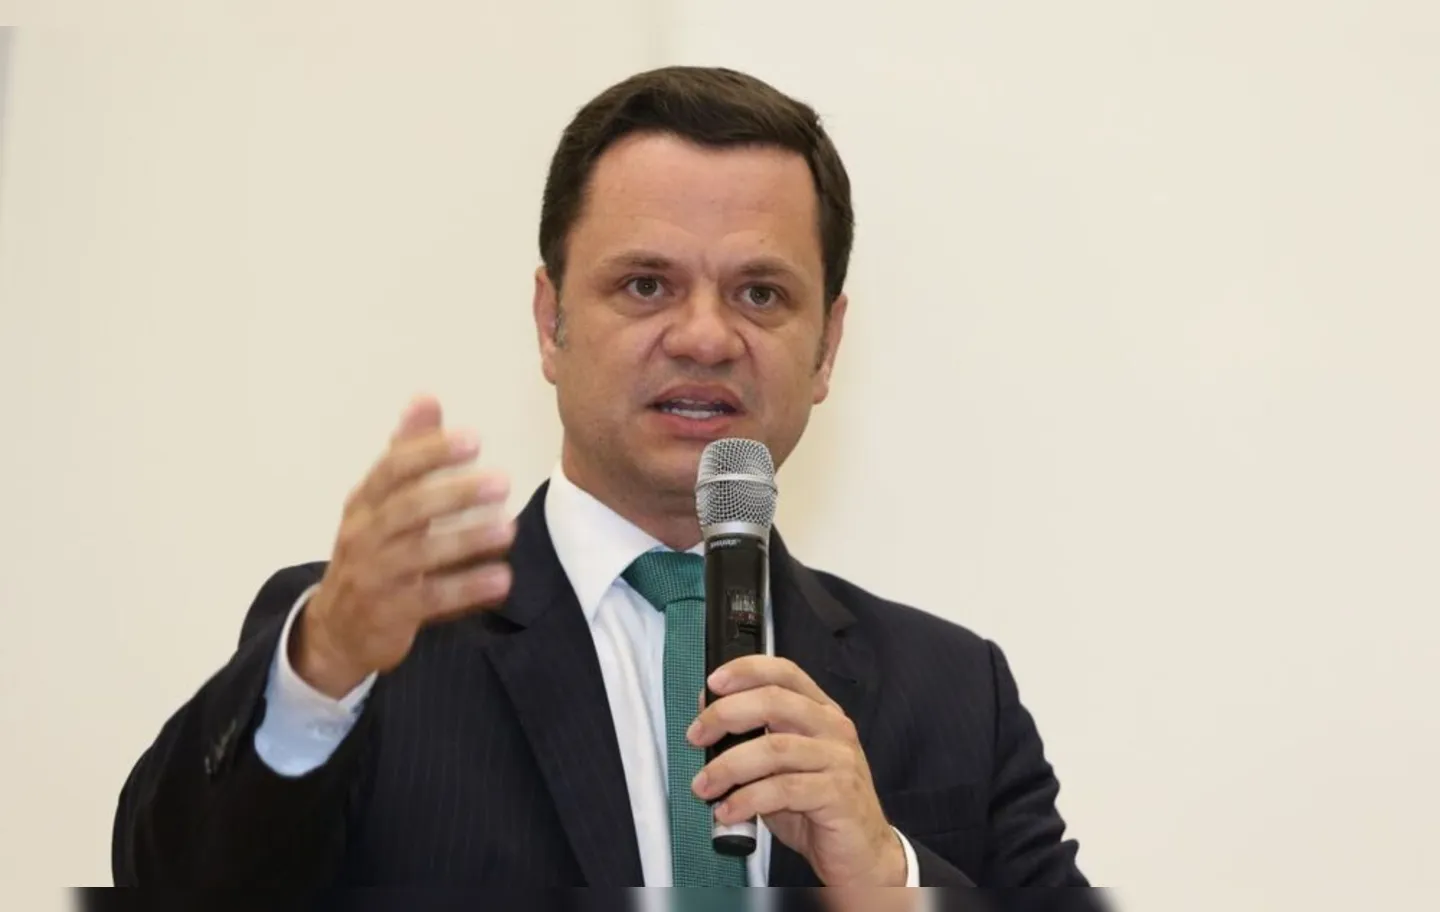 Torres participou de uma reunião de ministros do governo com o presidente Jair Bolsonaro